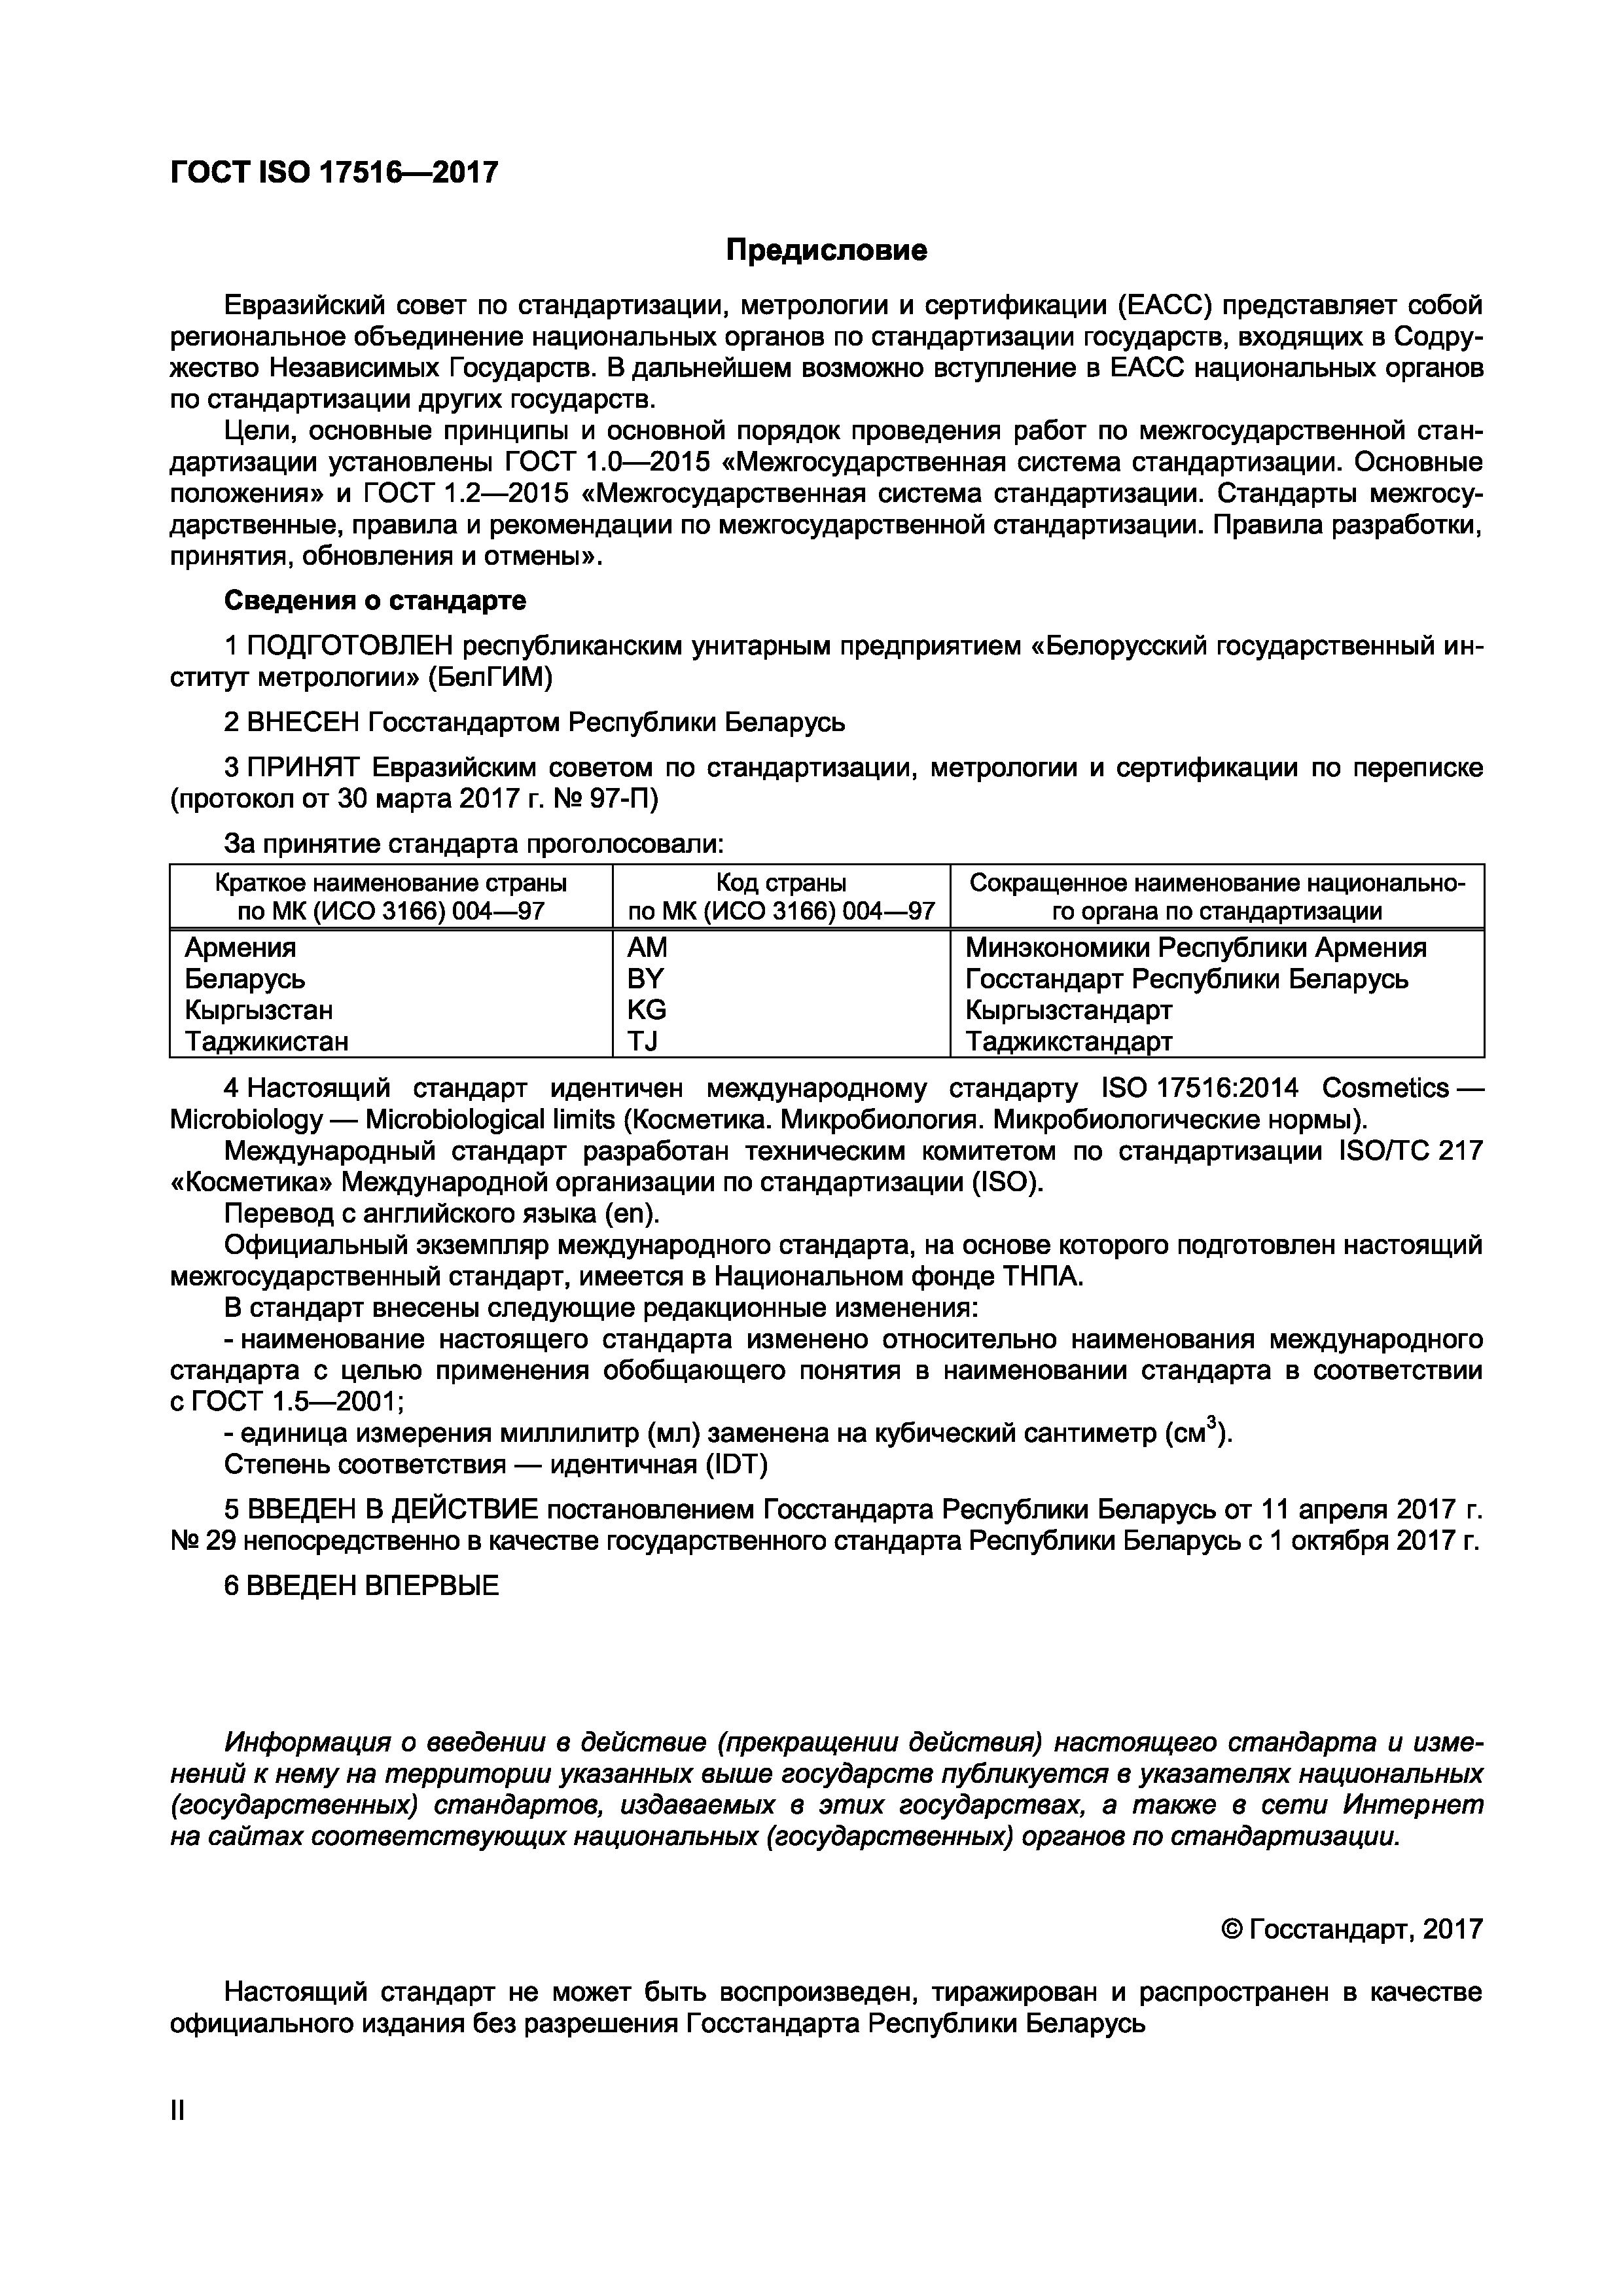 ГОСТ ISO 17516-2017